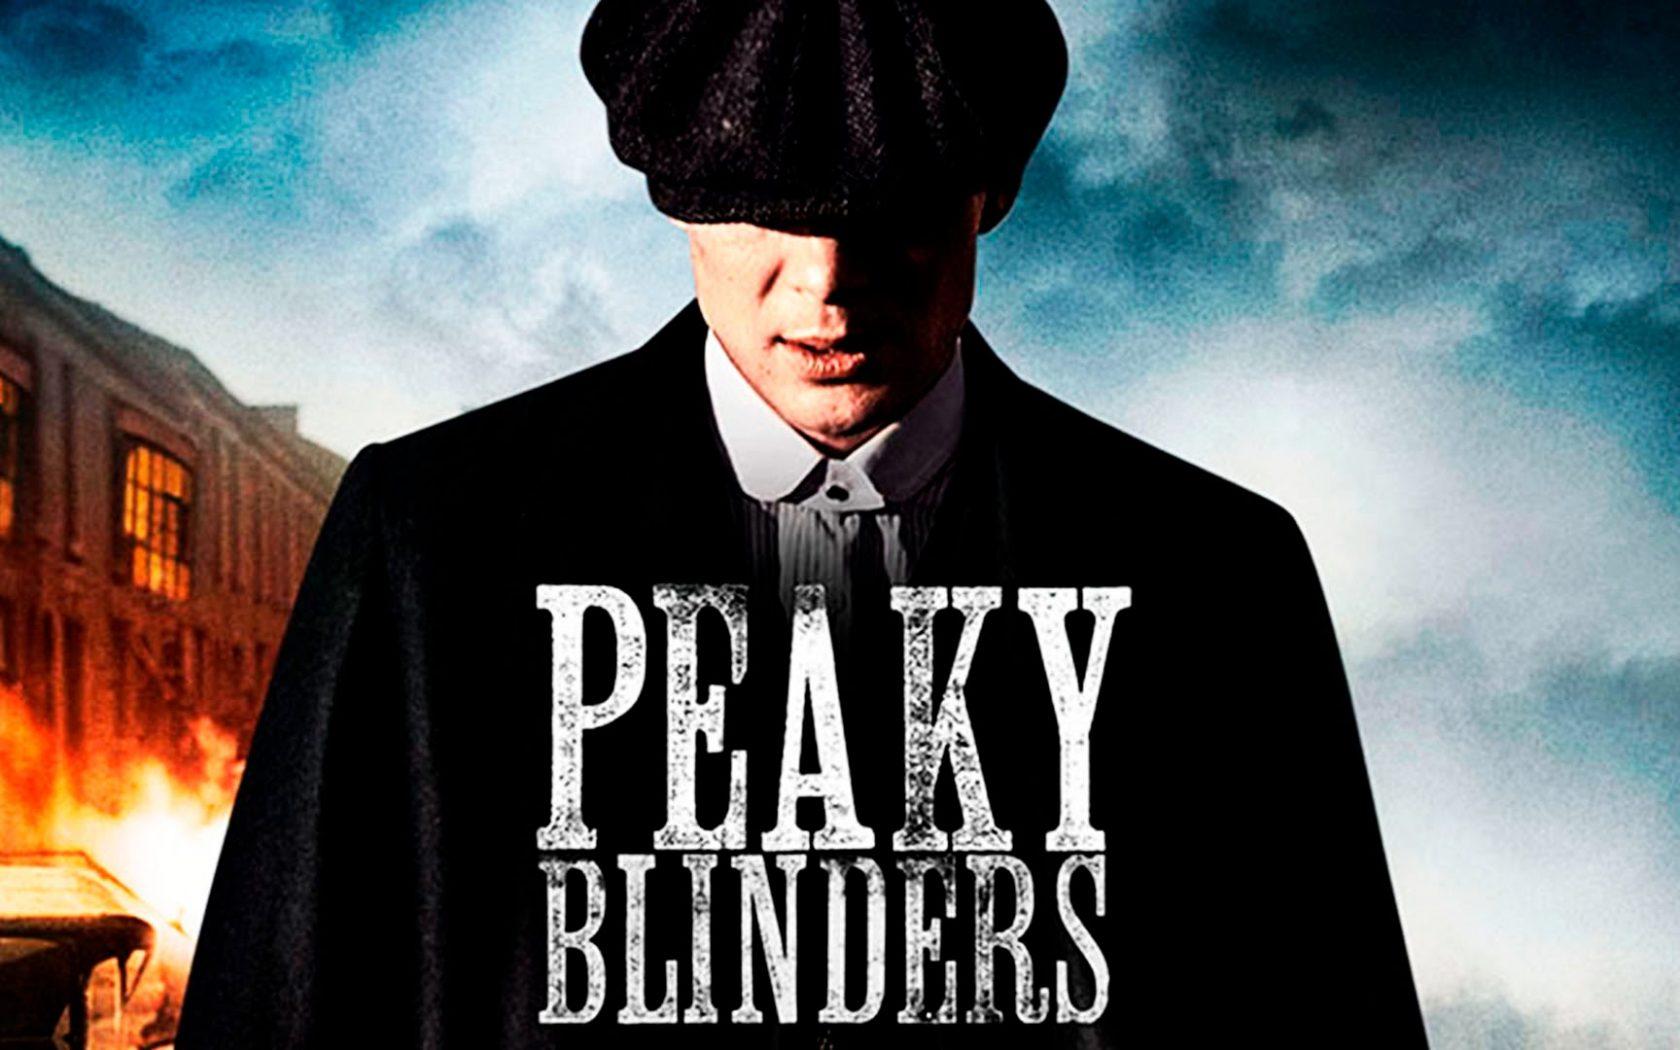 Peaky Blinders Peaky Blinders Wallpaper Peaky Blinders Poster Peaky Blinders Theme Kulturaupice 